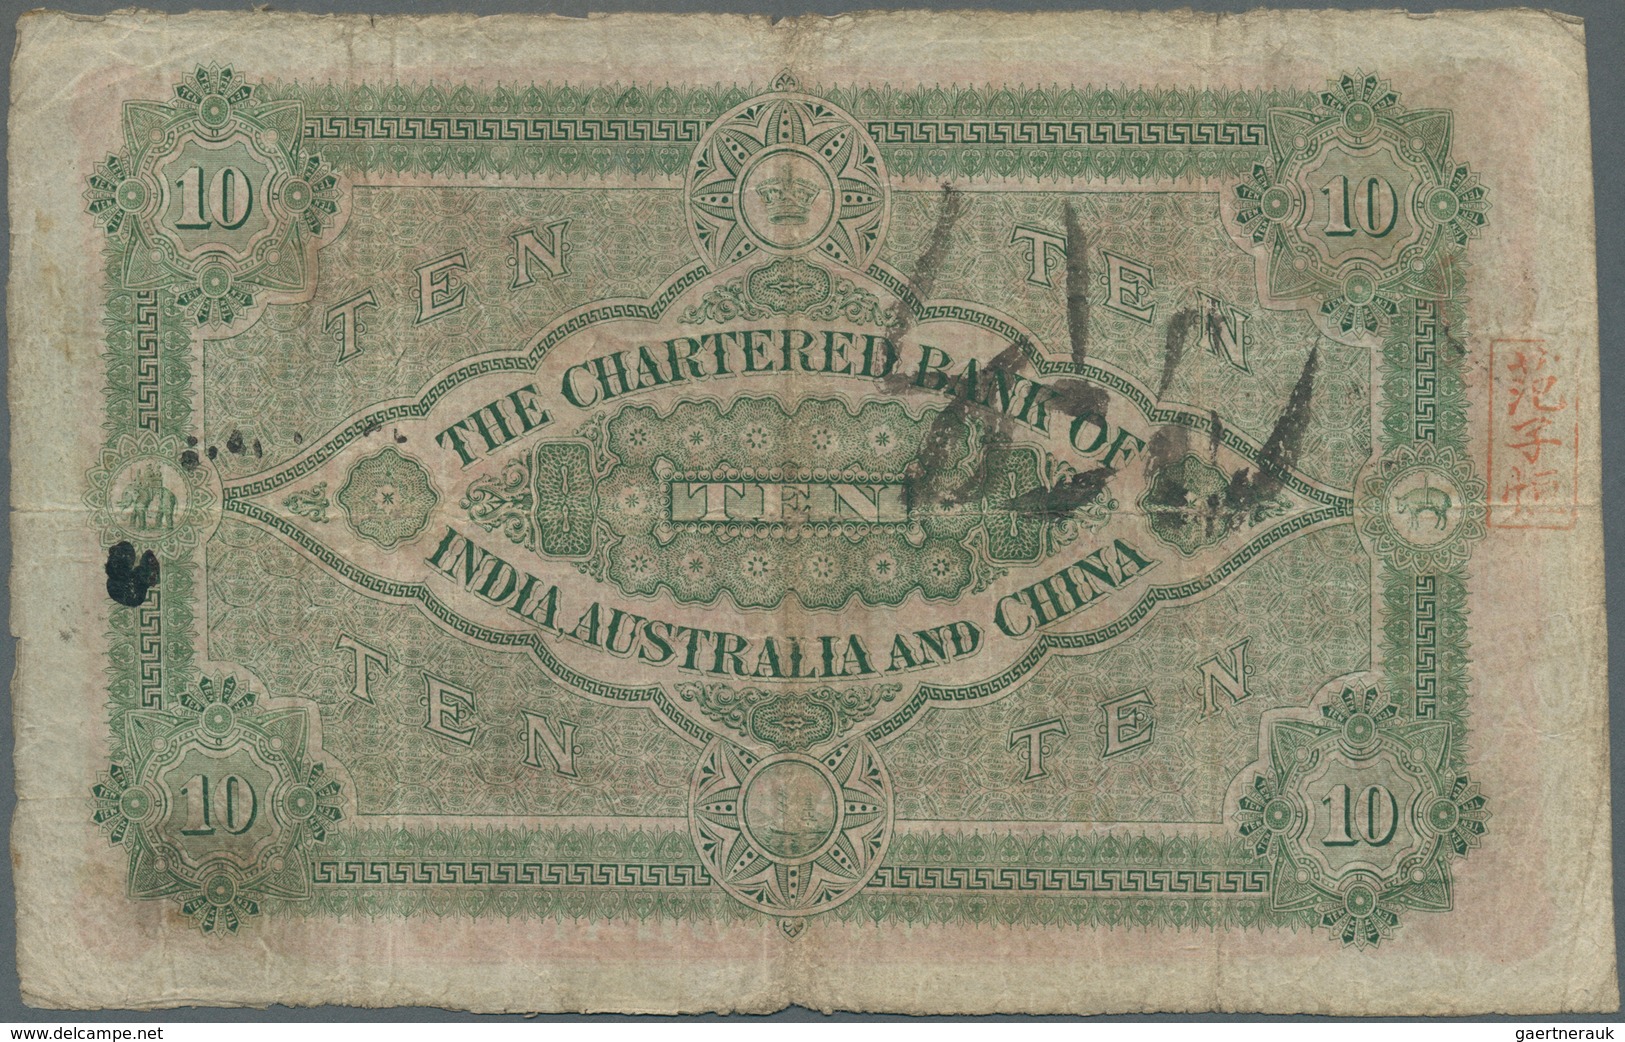 01673 Hong Kong: Chartered Bank Of India, Australia & China 10 Dollars June 10th 1913, P.35, Highly Rare N - Hongkong